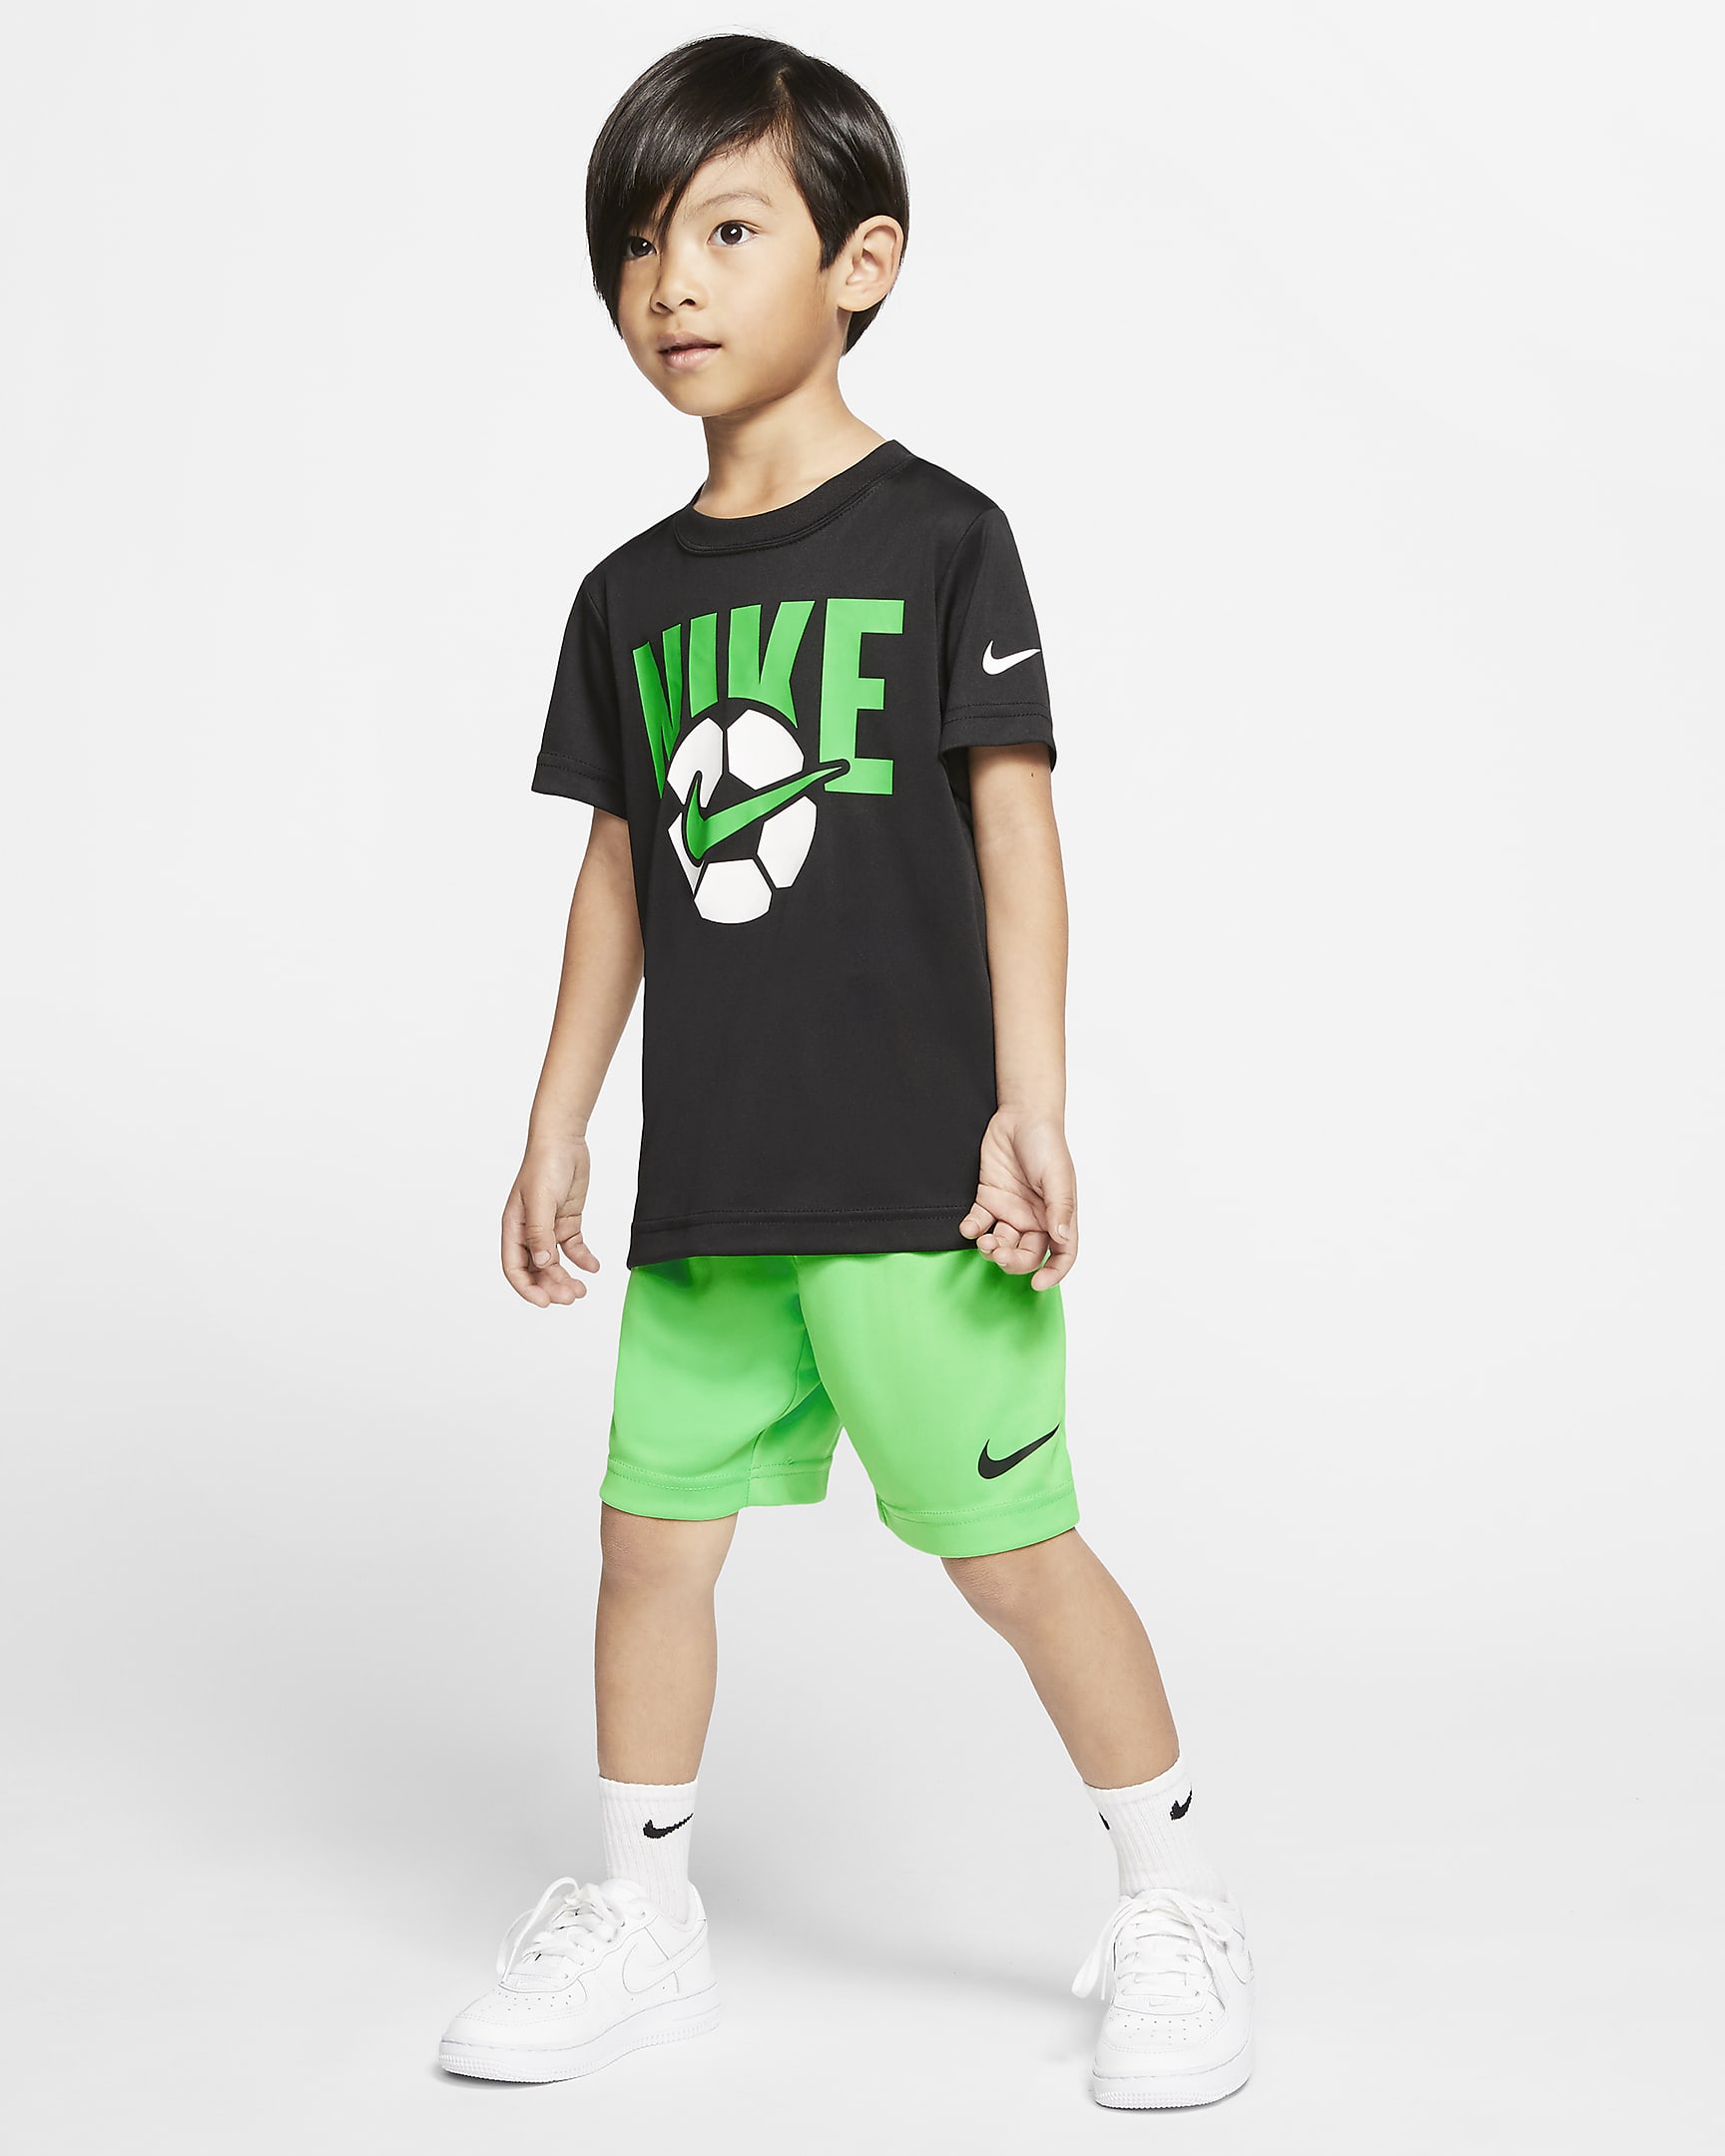 Nike Dri-FIT Little Kids' T-Shirt and Shorts Set. Nike.com